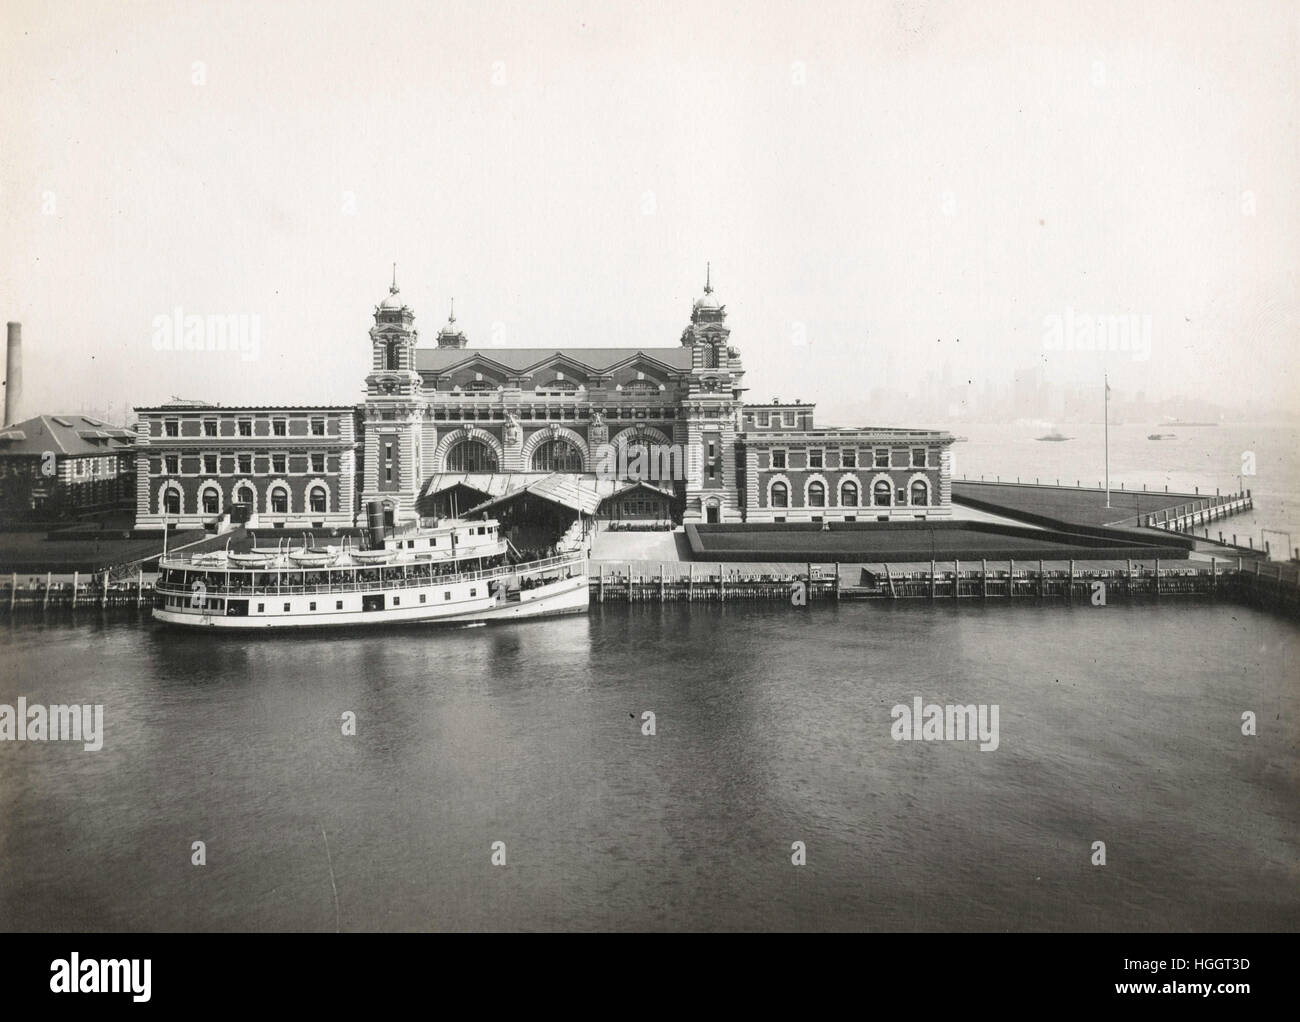 Einen ausgezeichneten Blick auf die Fassade der Immigration Station; ein Boot ist vorne - Ellis Island Immigration Station 1902-1913-Foto angedockt: Edwin Levick Stockfoto